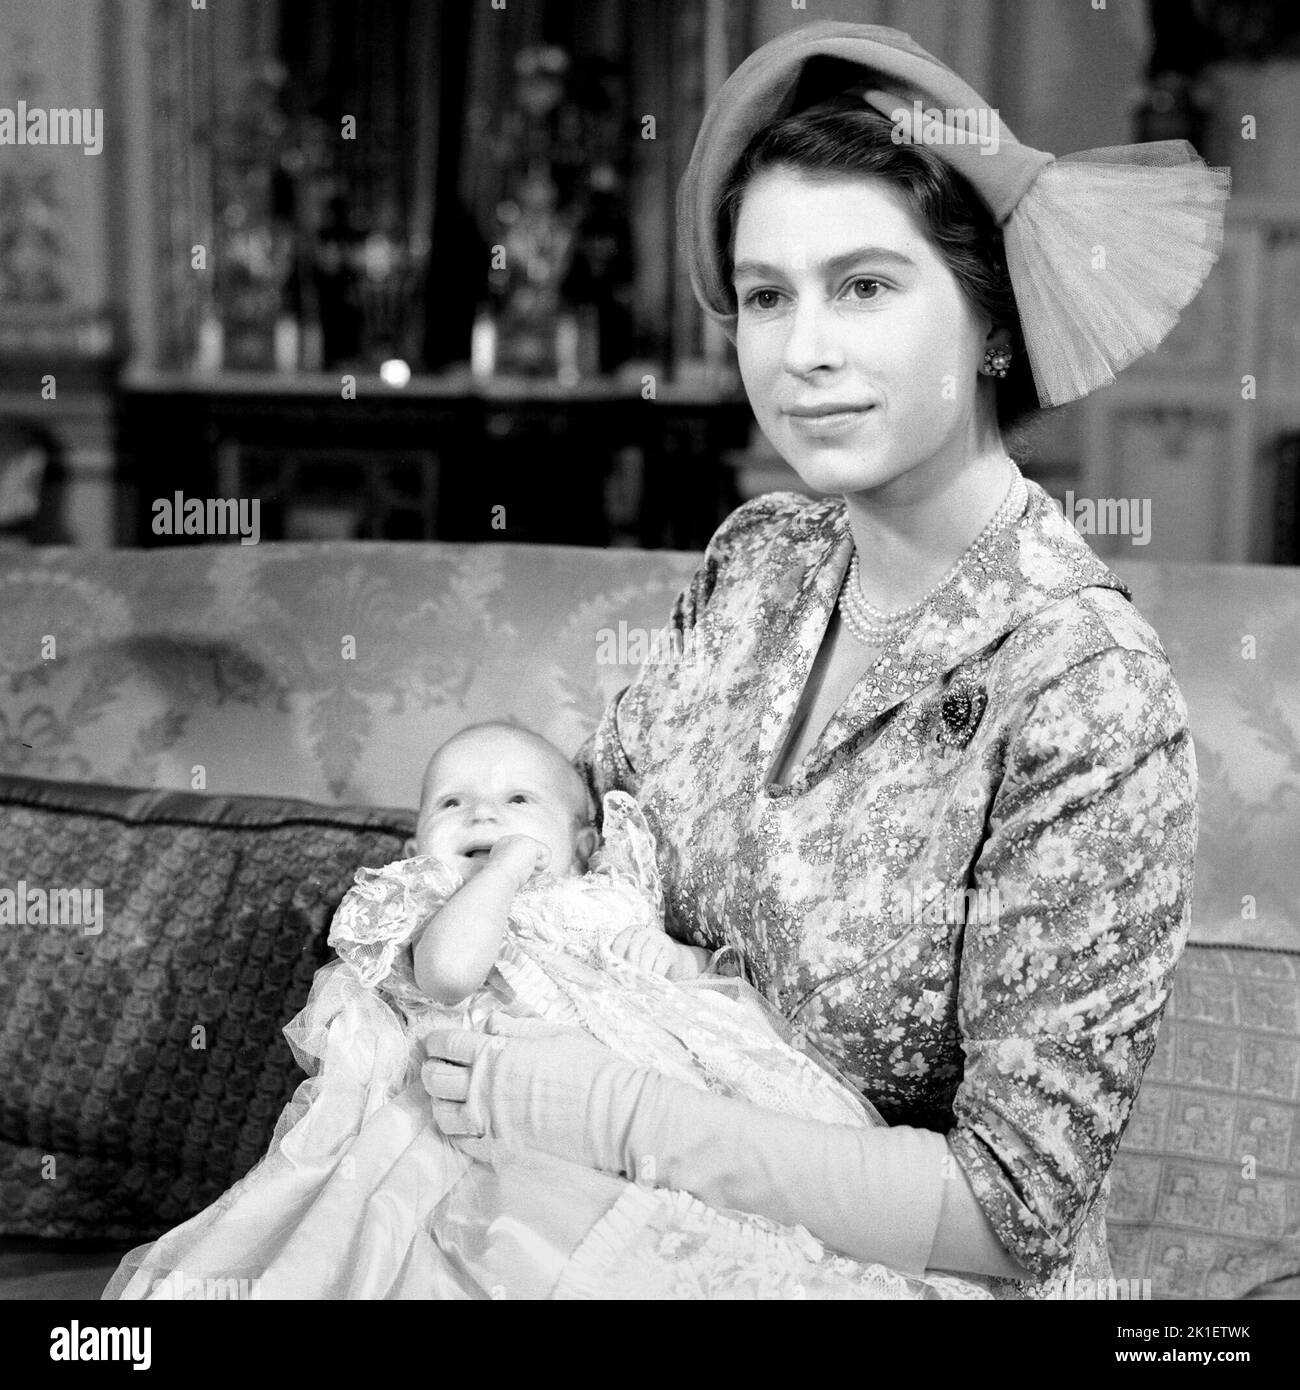 Foto de archivo fechada el 21/10/1950 de la Princesa Isabel (ahora Reina Isabel II) con su hija pequeña, la Princesa Ana, después del bautizo en el Palacio de Buckingham, Londres. Fecha de emisión: Domingo 18 de Septiembre de 2022.. El crédito de la foto debe decir: PA Wire Foto de stock